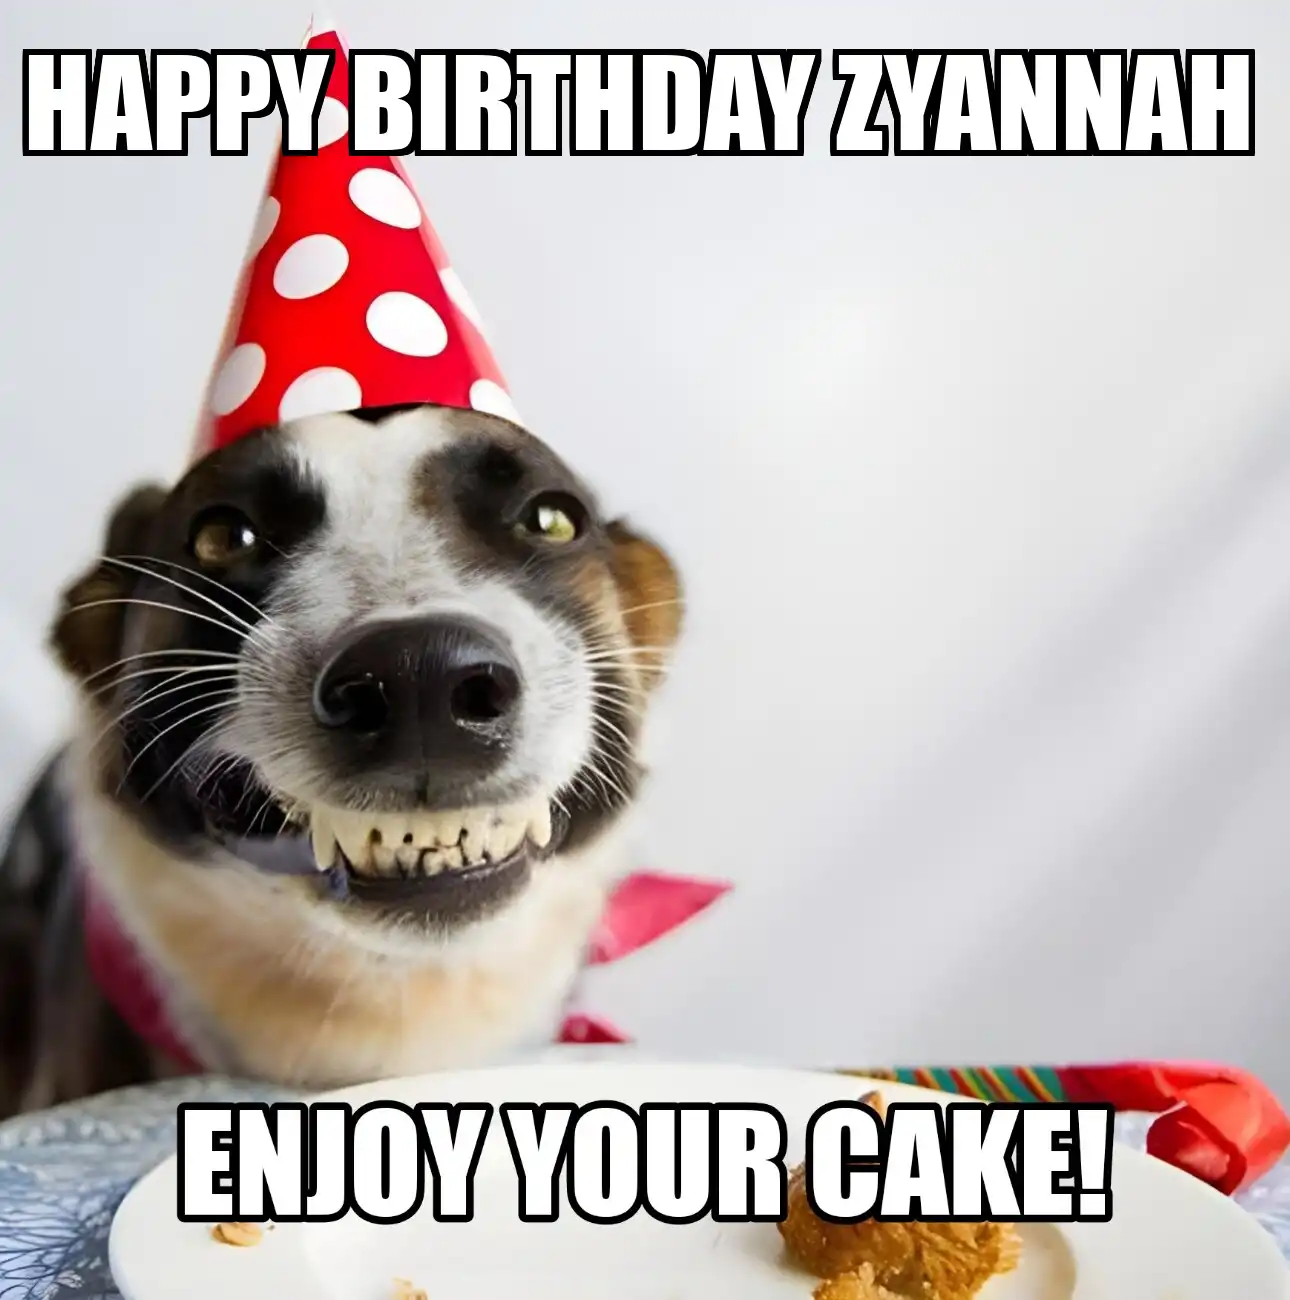 Happy Birthday Zyannah Enjoy Your Cake Dog Meme